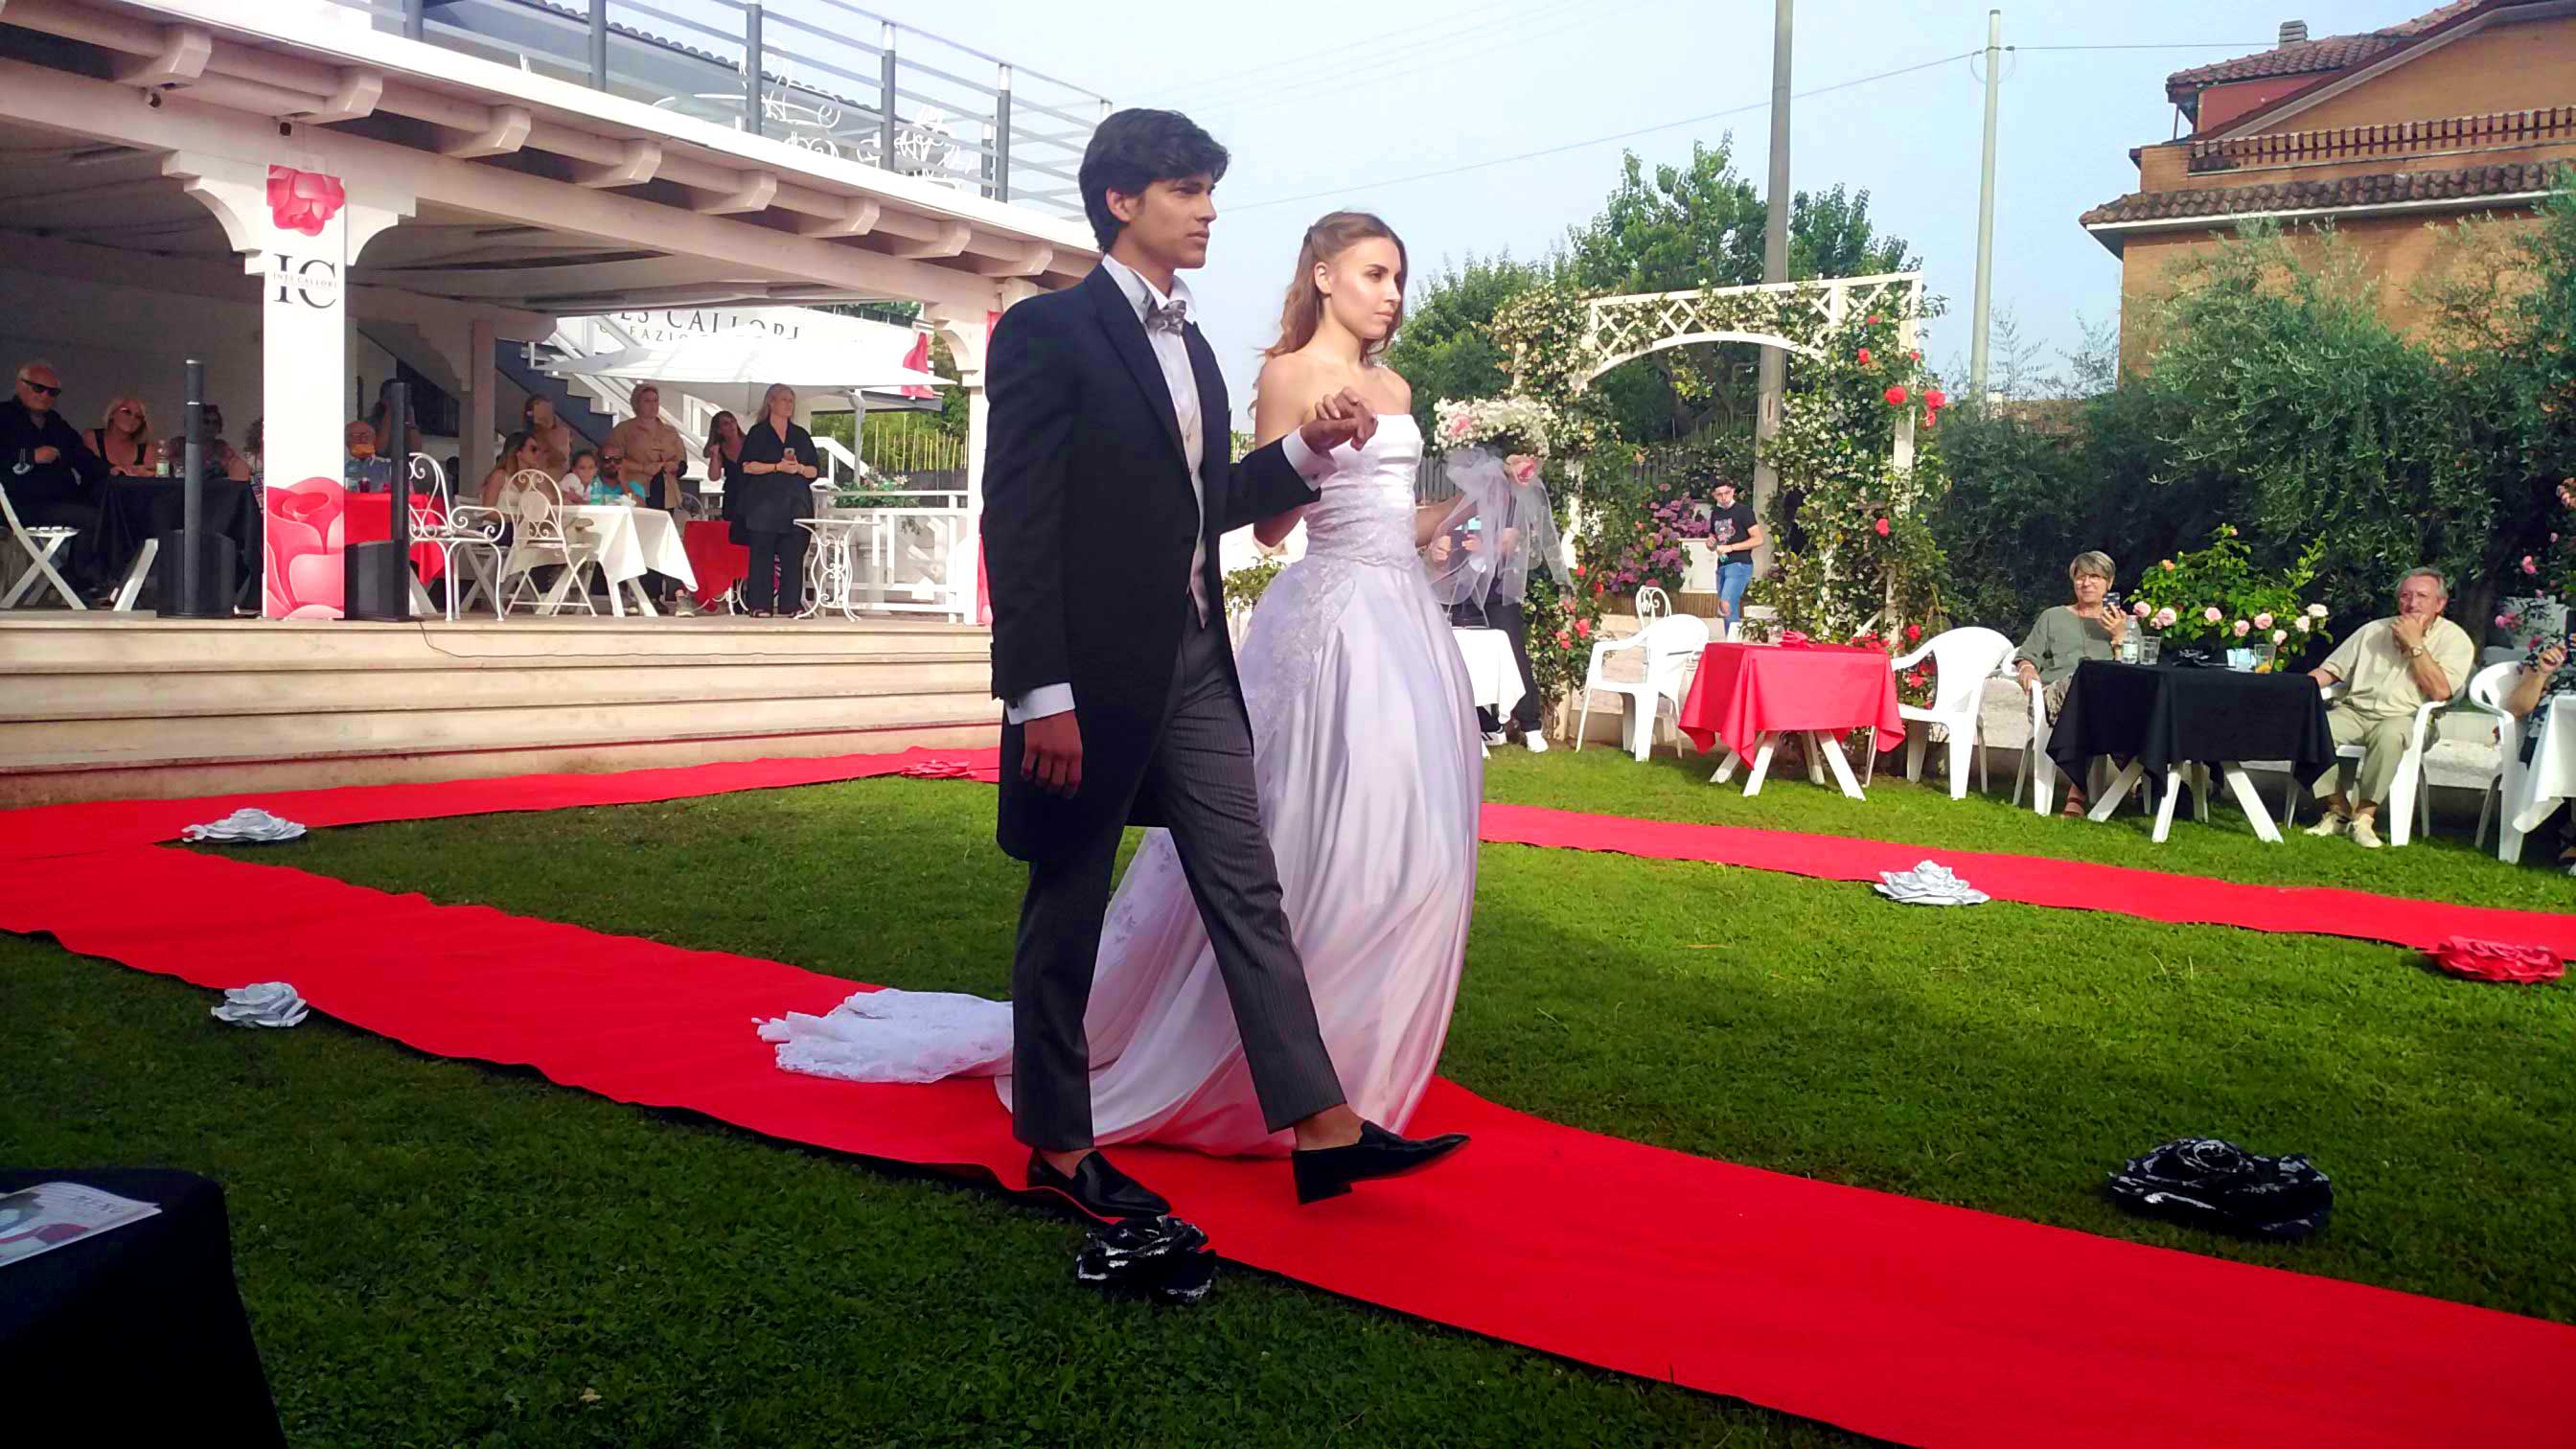 Abiti sposo : Eleonora Giamberduca presenta un abito da matrimonio per uomo. Location villa Aurora - Frascati. Vestiti su misura Elins moda a Roma foto5